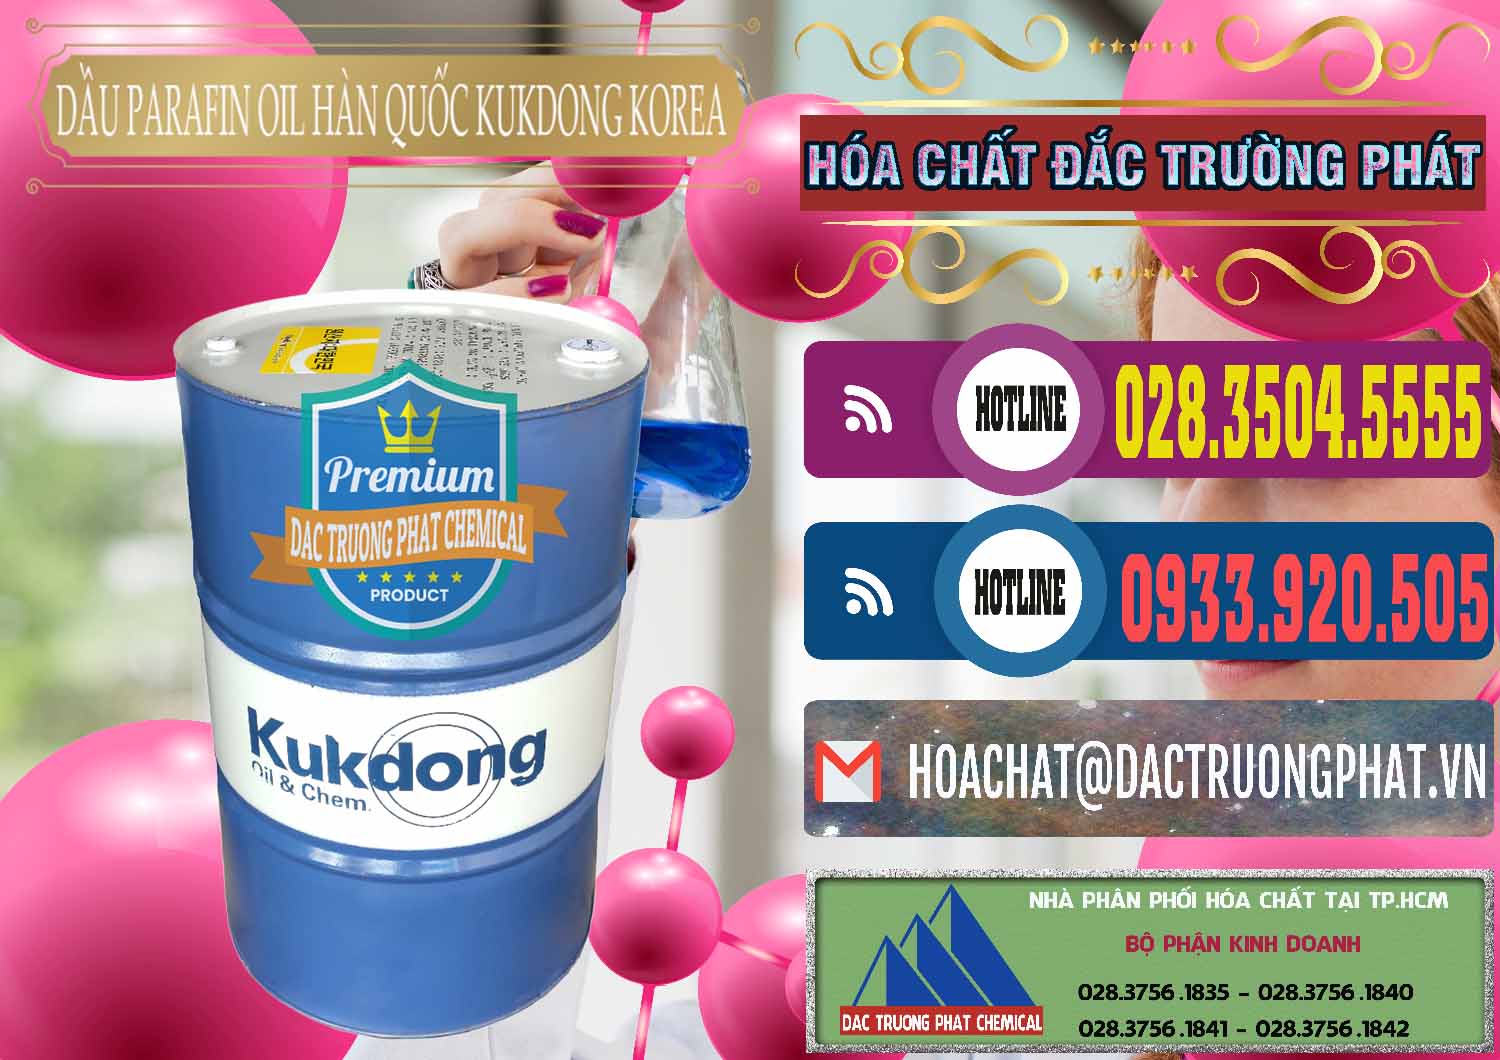 Chuyên nhập khẩu và bán Dầu Parafin Oil Hàn Quốc Korea Kukdong - 0060 - Đơn vị chuyên phân phối và nhập khẩu hóa chất tại TP.HCM - muabanhoachat.com.vn